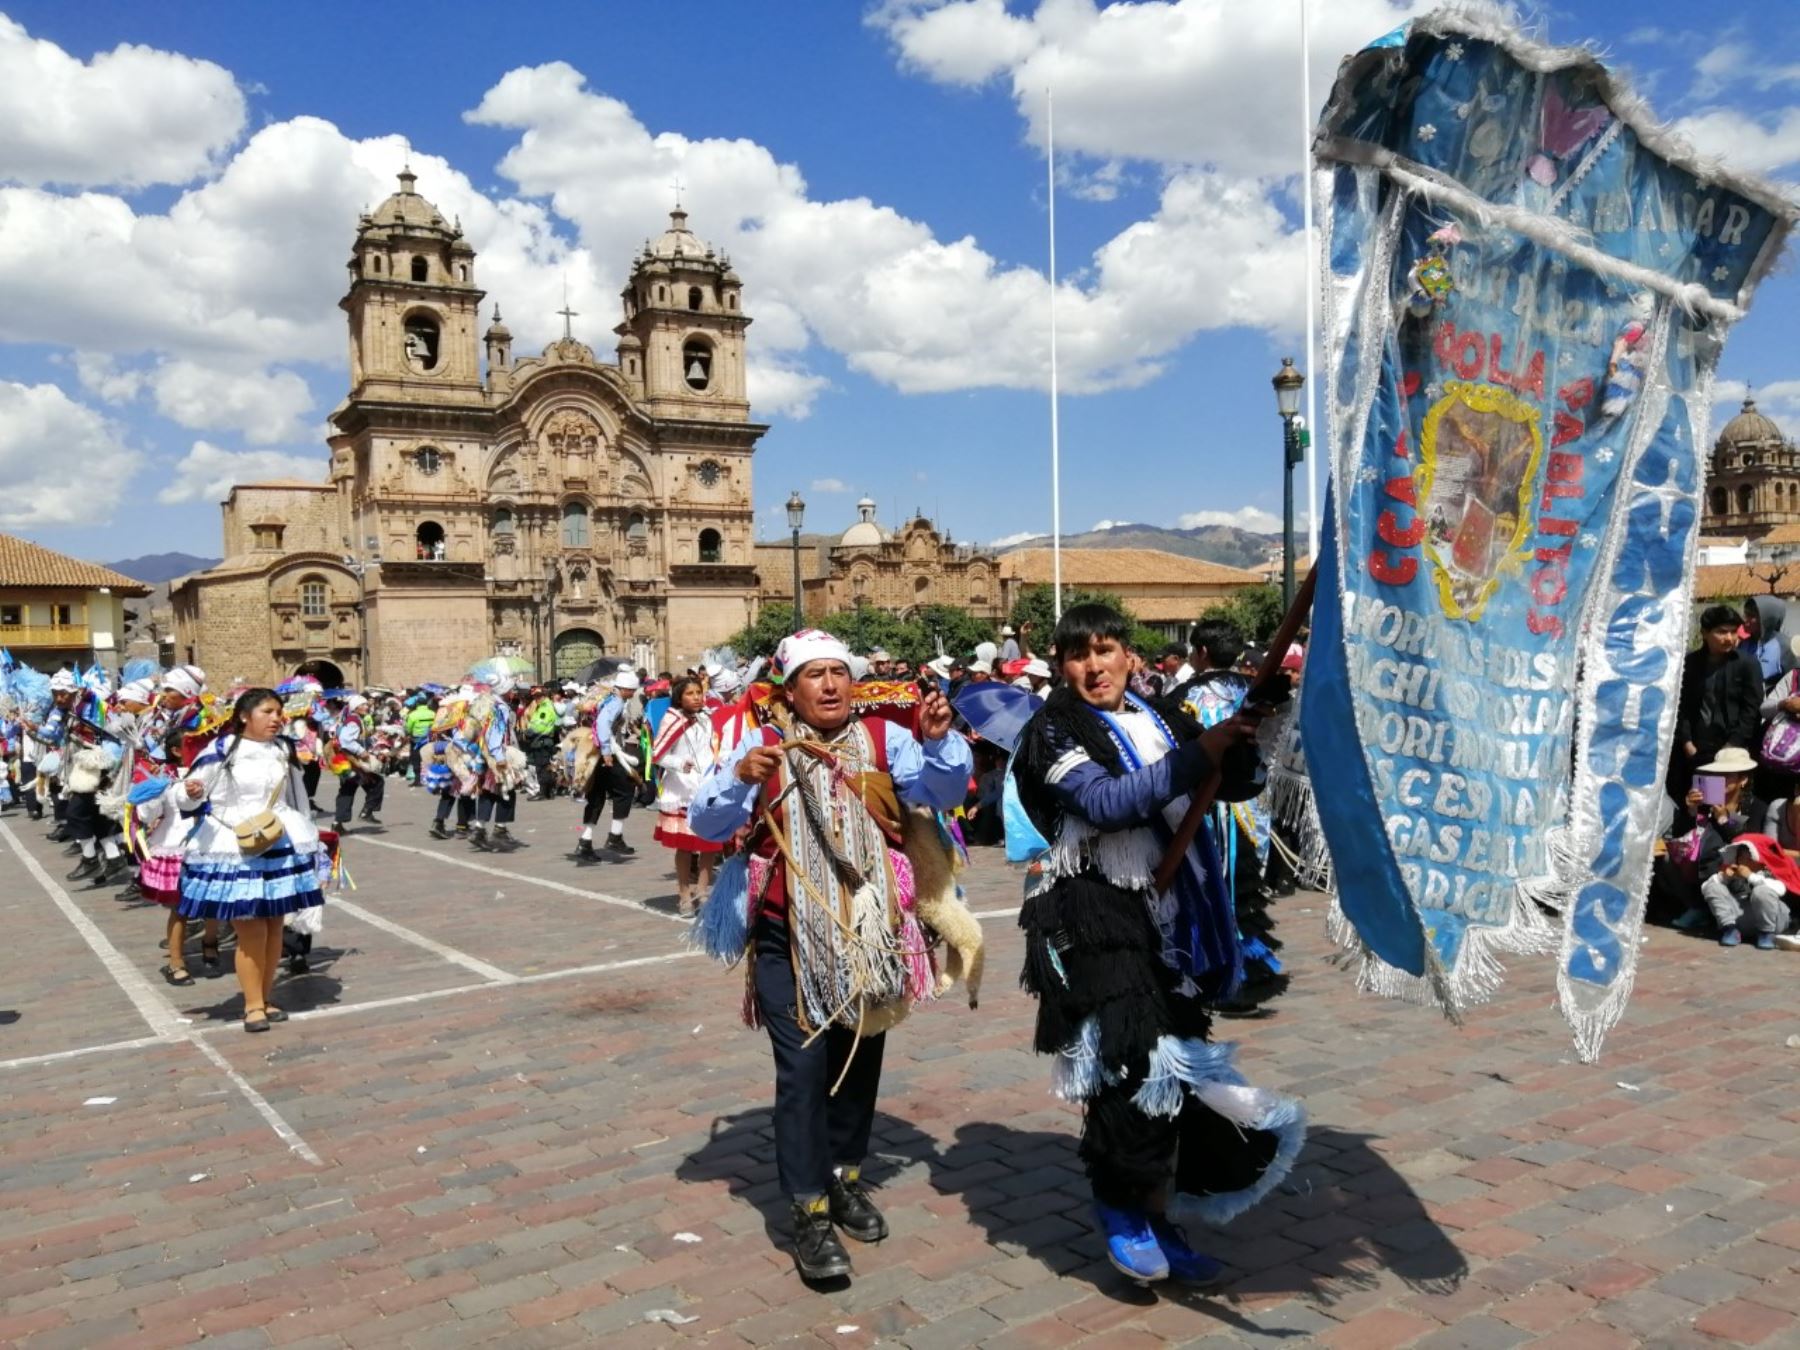 Peregrinos del Señor de Qoyllur Riti anuncian festividad en honor de Señor de las Nieves que se celebra en el nevado Colquepunko, en la provincia de Quispicanchi, región Cusco. ANDINA/Percy Hurtado Santillán